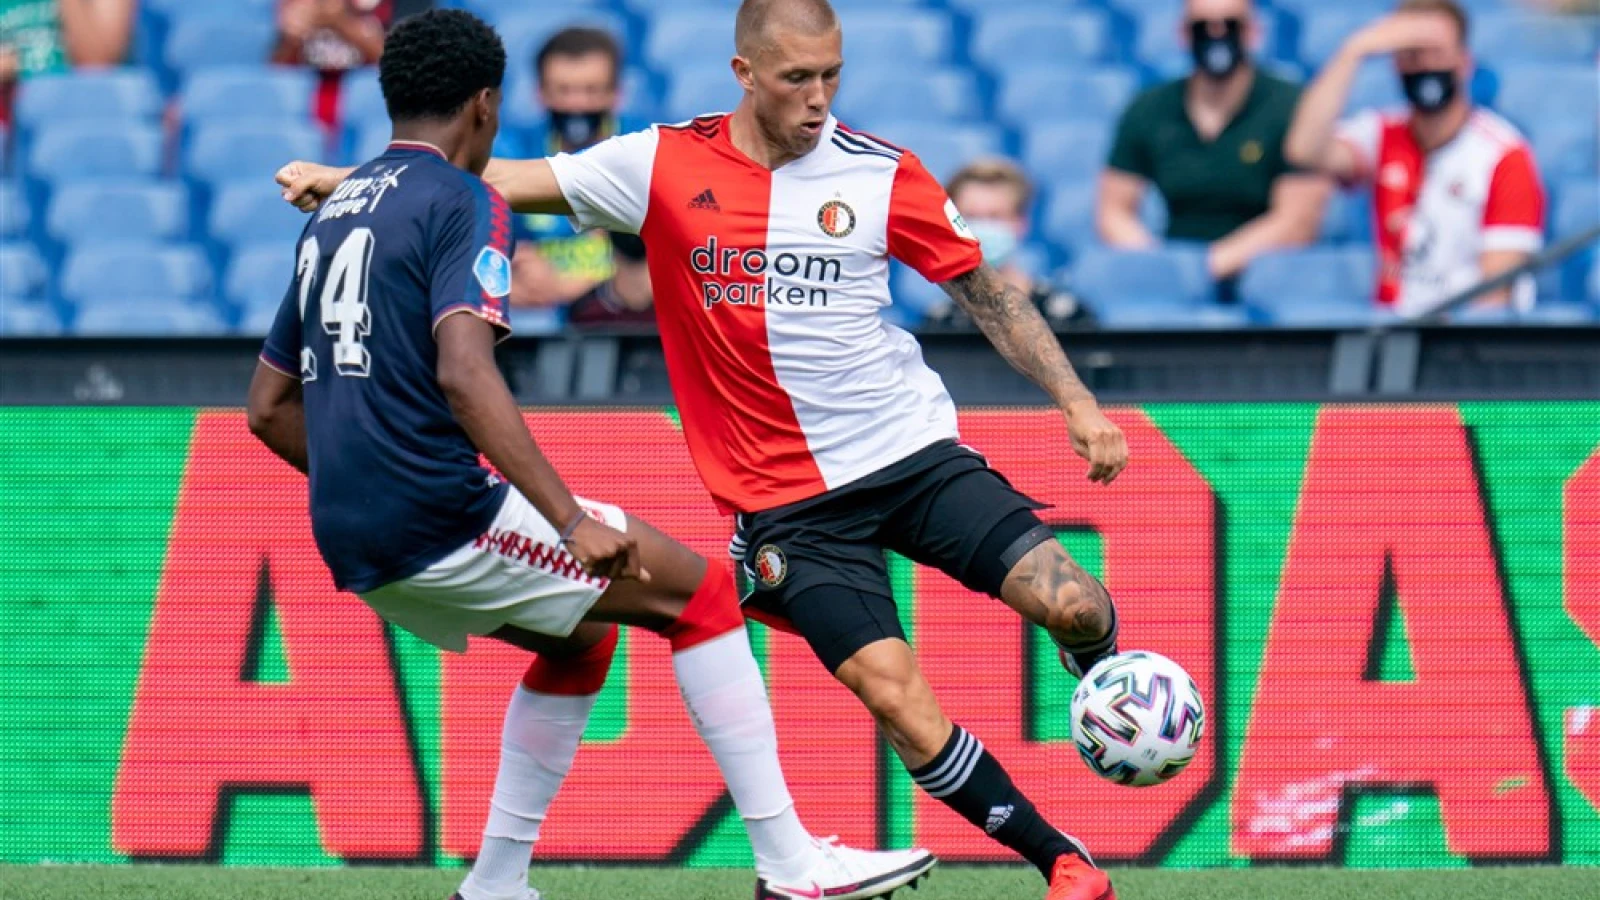 LIVE | Feyenoord - FC Twente 0-0 | Einde wedstrijd